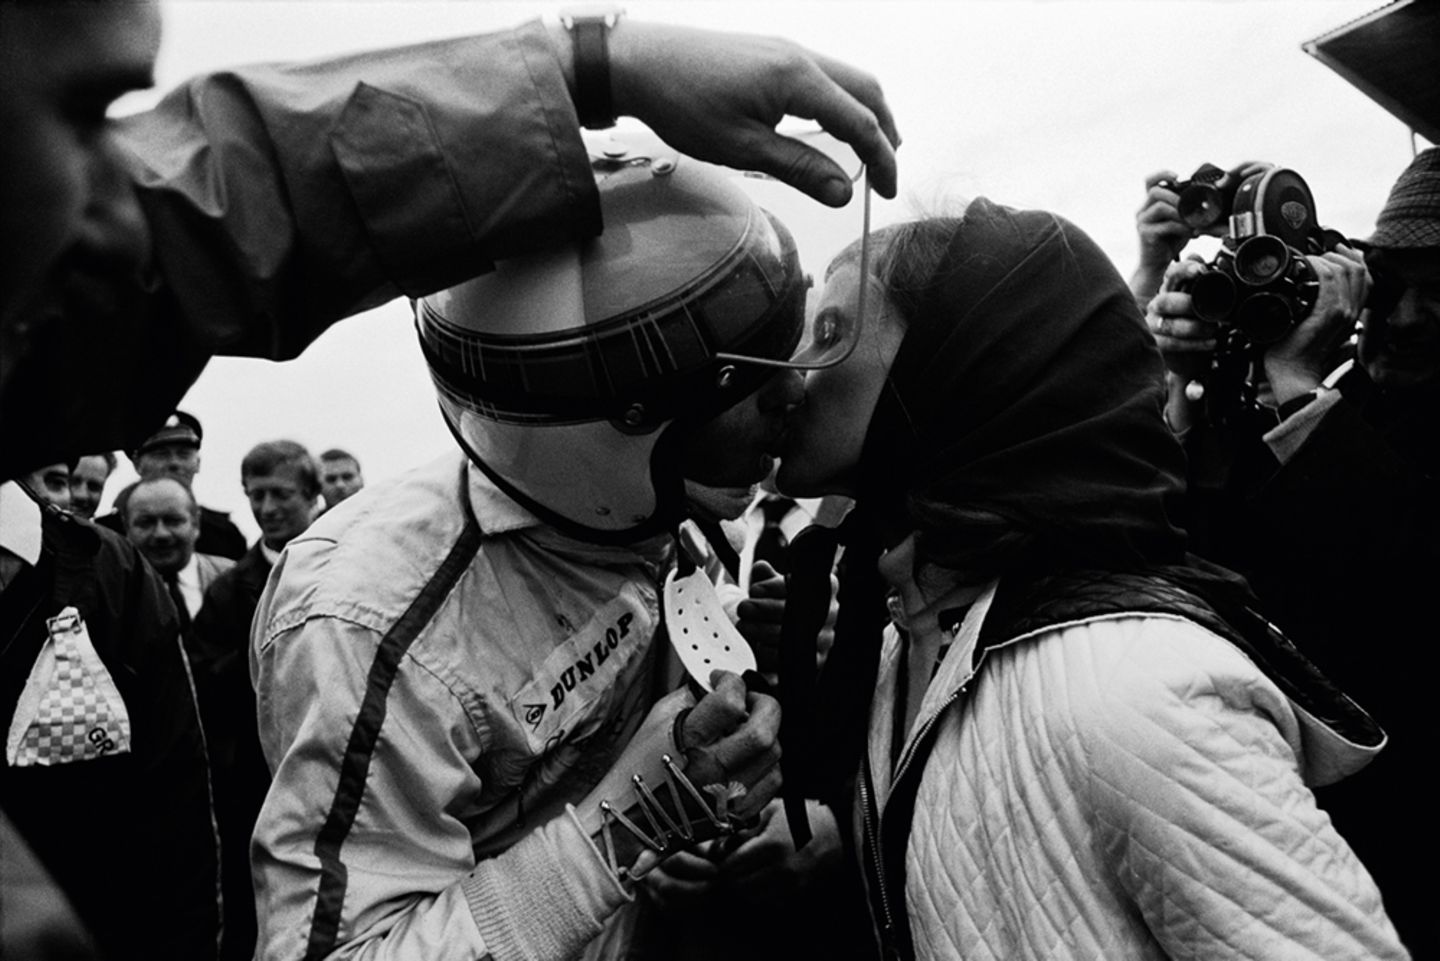 1968 GP Holland: Nach dem Sieg in Zandvoort küssen sich die Stewarts. Ein Helfer muss das Visier öffnen, denn die rechte Hand des Piloten ist stark bandagiert.  The Golden Age of Formula 1, Kleine Ausgabe - Rainer W. Schlegelmilch - 24,90 Euro